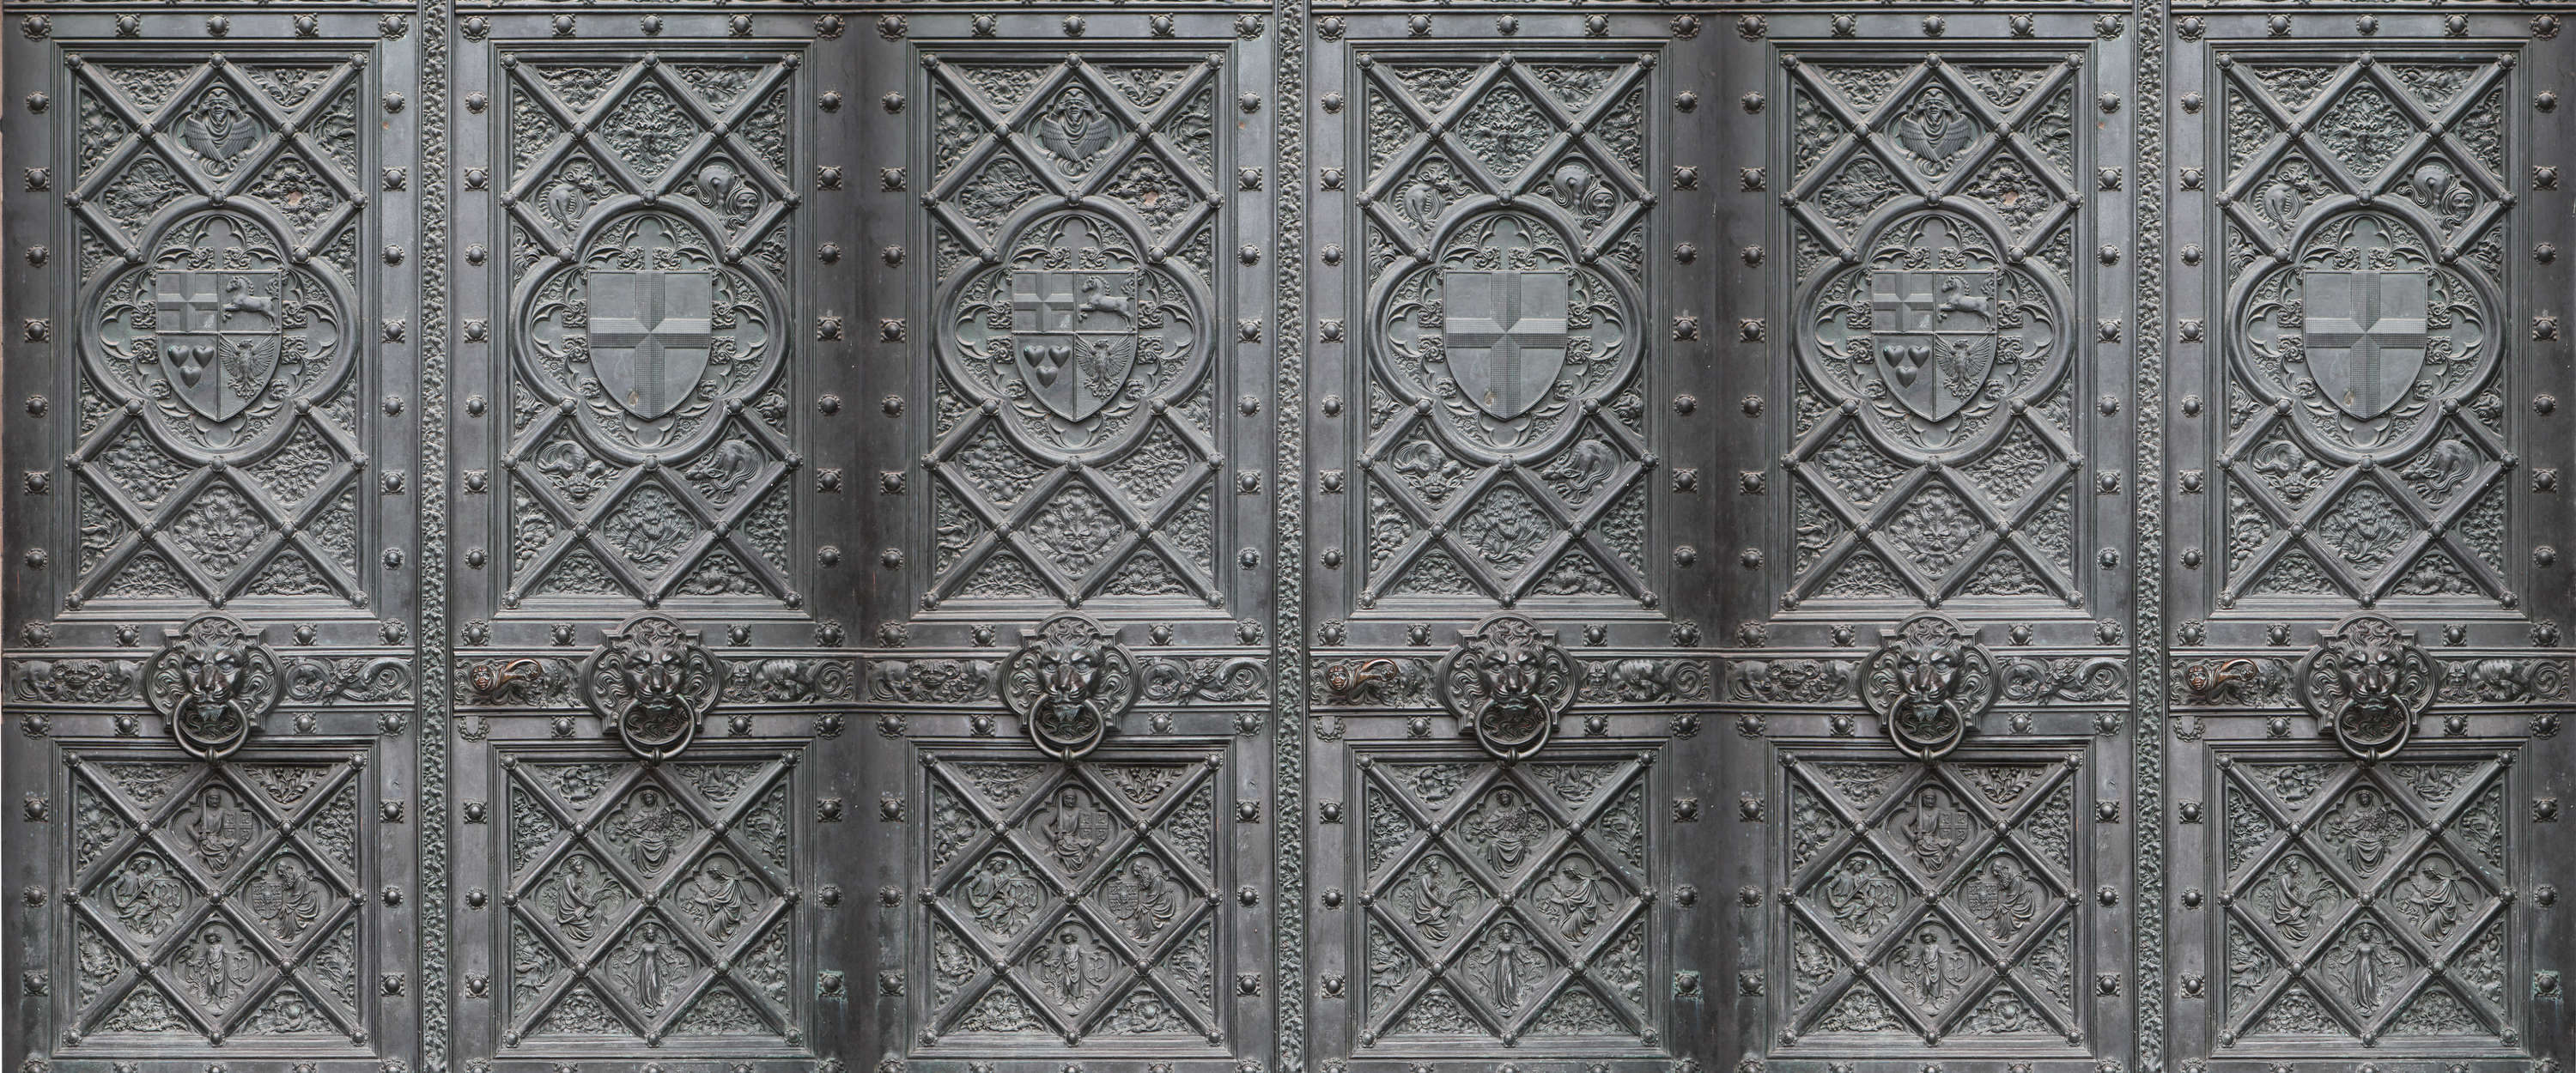             Fototapete Metall Tür im Antik Stil mit Detail-Muster
        